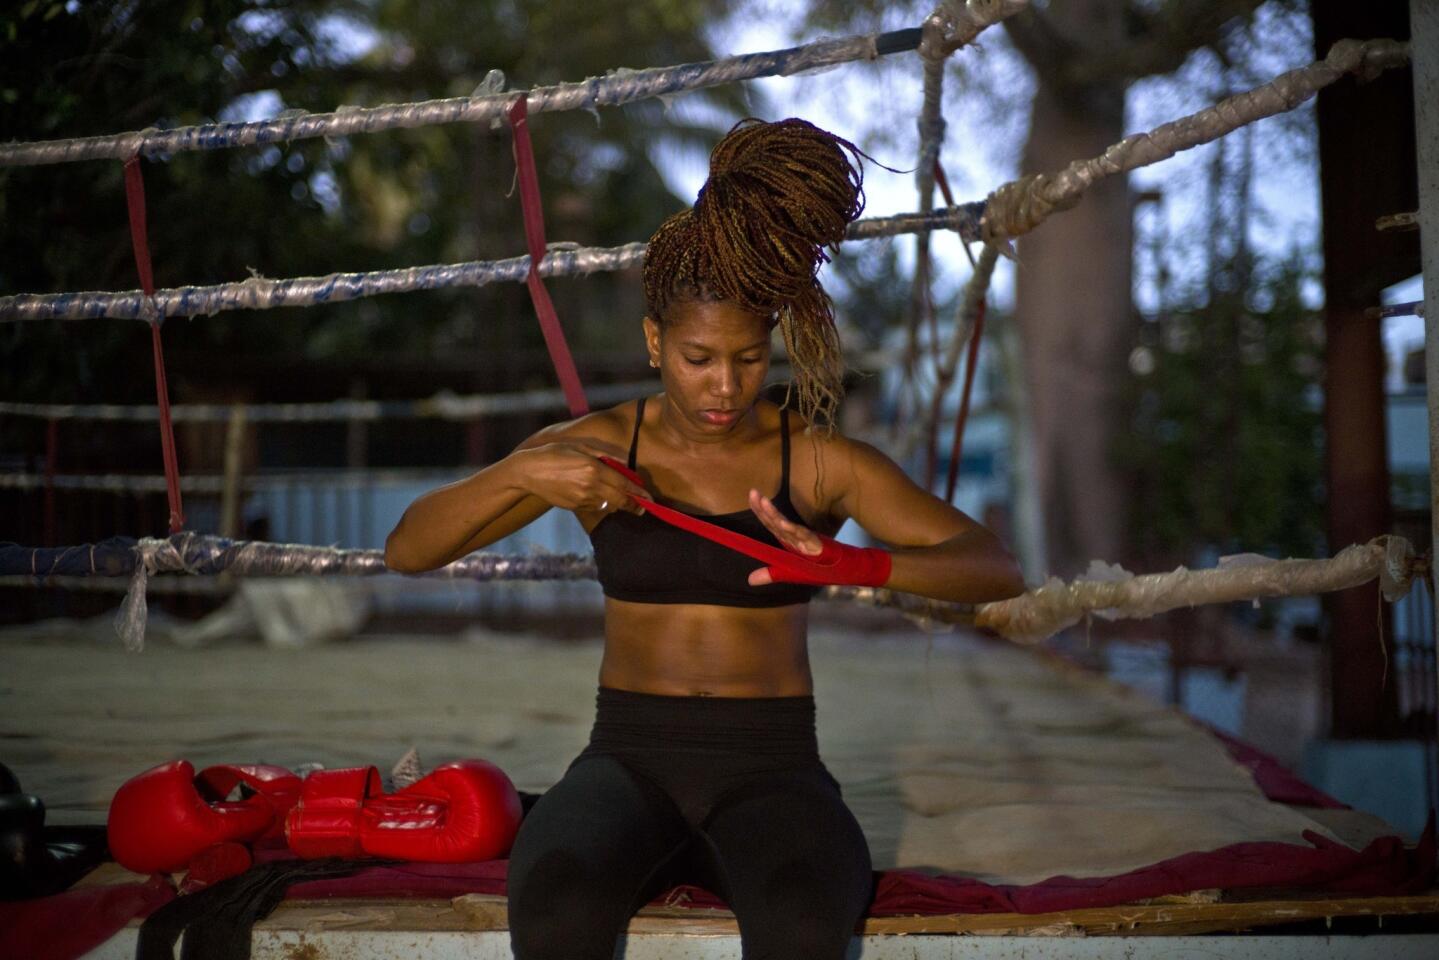 La lucha de mujeres boxeadoras en Cuba